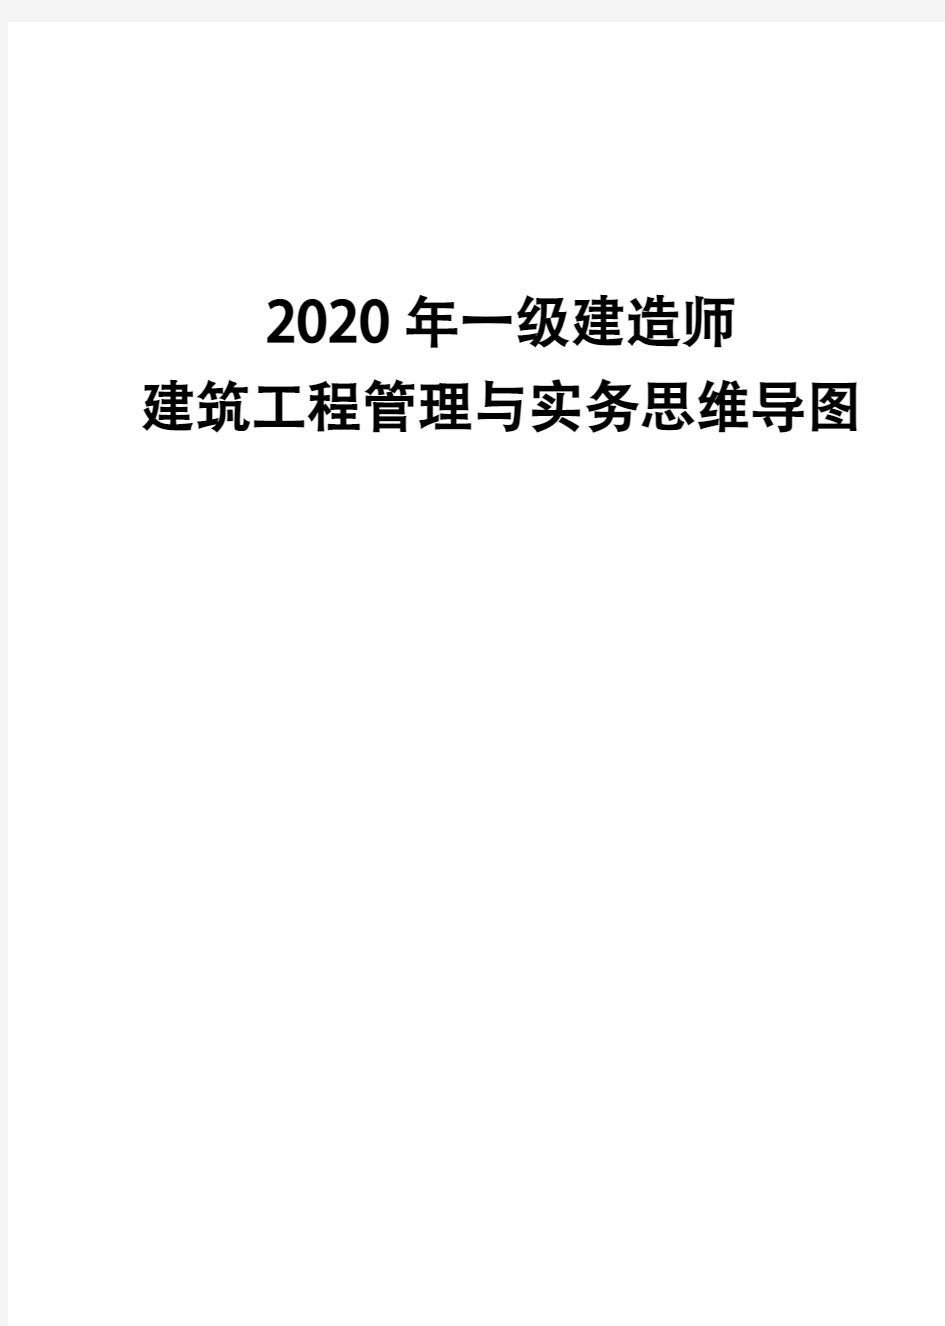 2020年一级建造师《建筑工程管理与实务》思维导图(五)